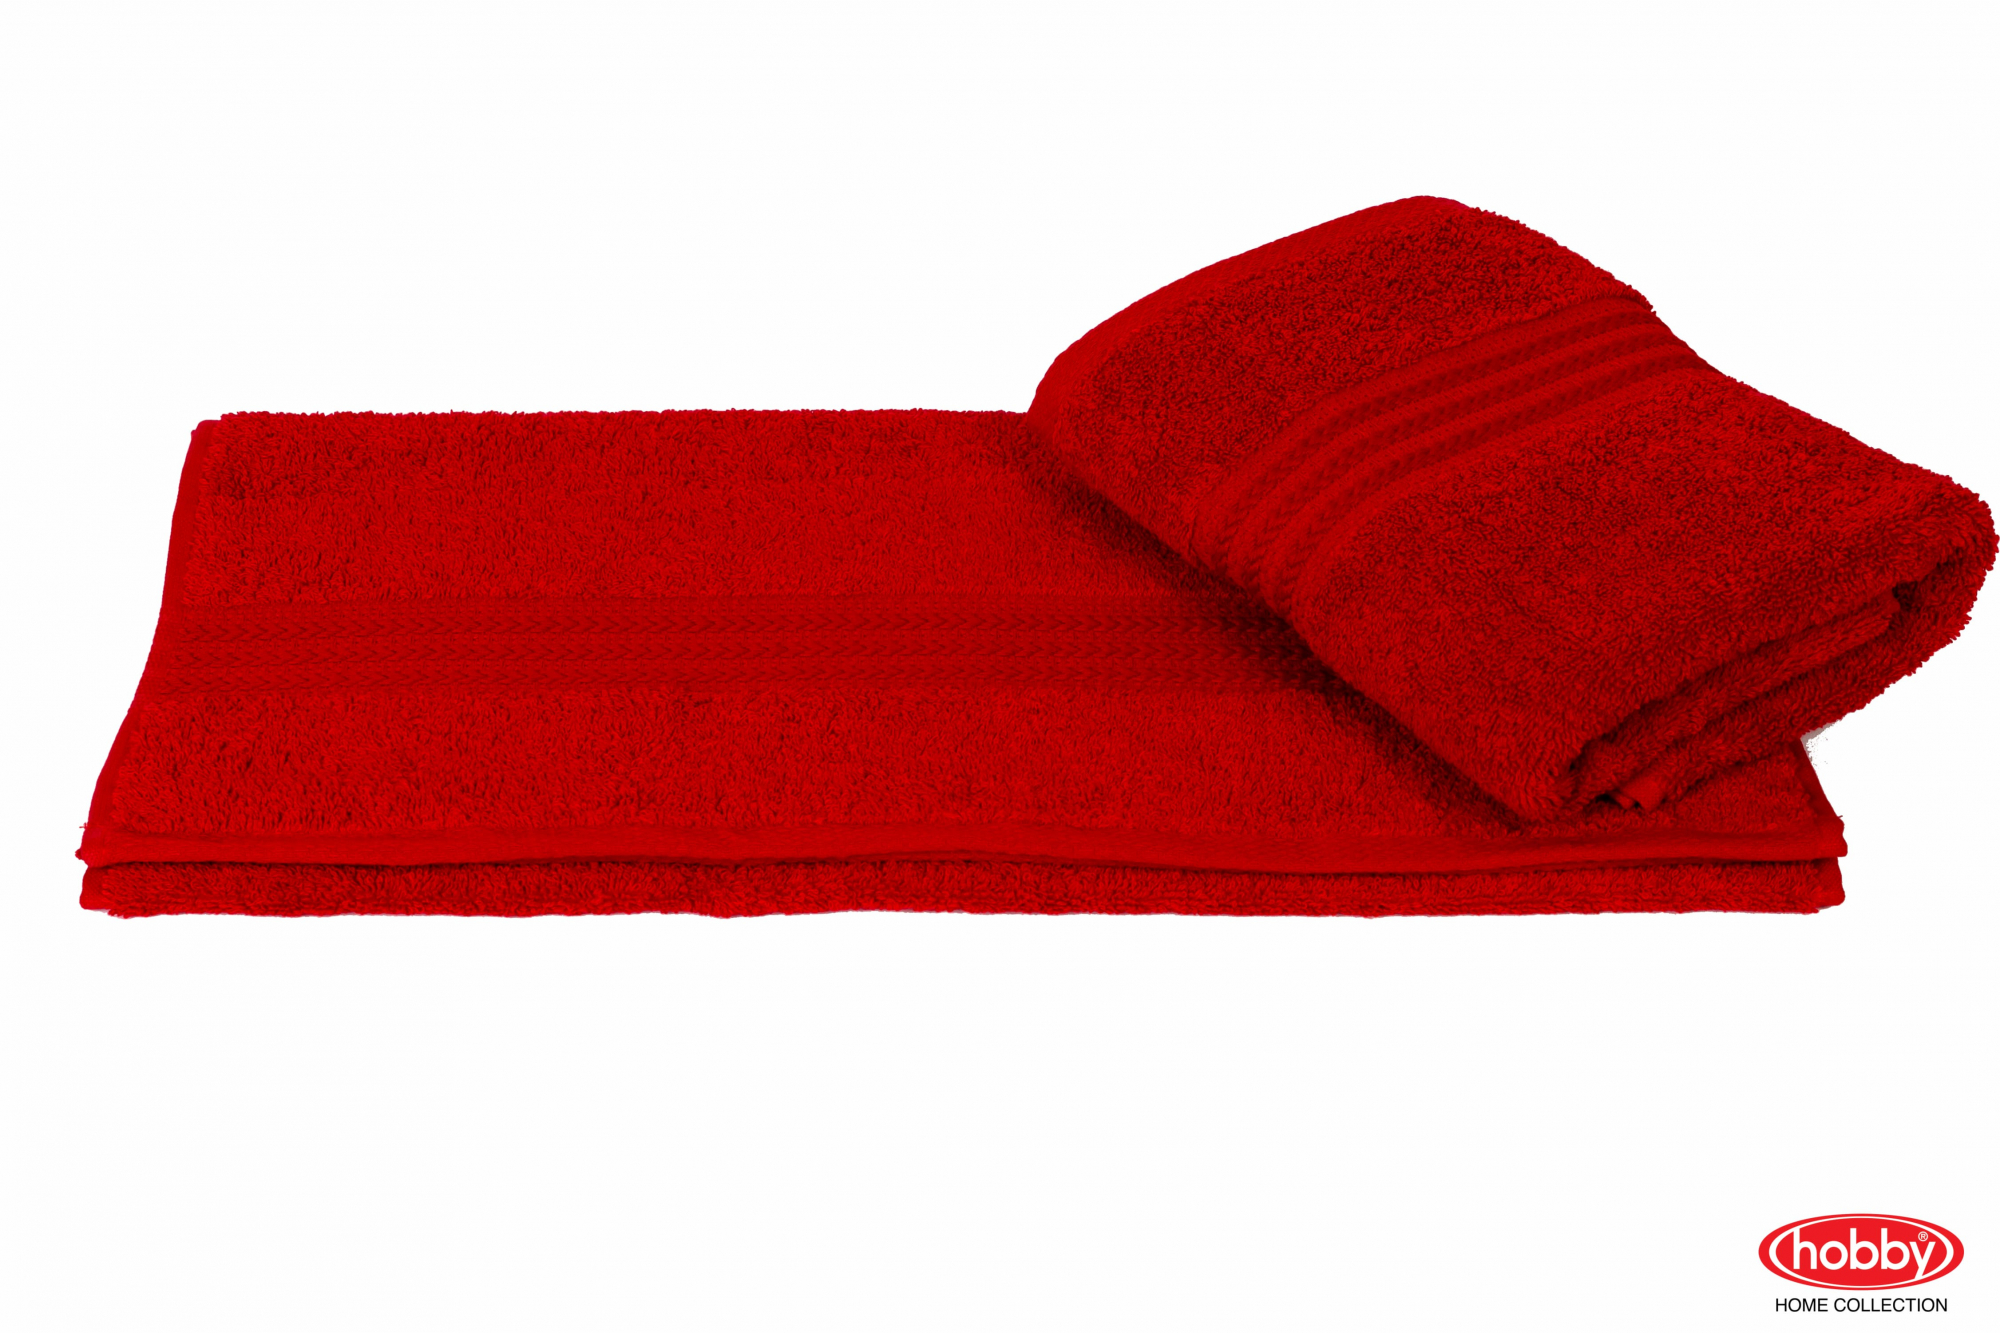 Купить полотенце 50х90. Полотенце махровое Hobby Home collection Sultan. [ЧЗ] полотенце махр гл/кр эконом 50х90 Red красный. Полотенце 100х180 малиновое. Полотенце махровое (красный).